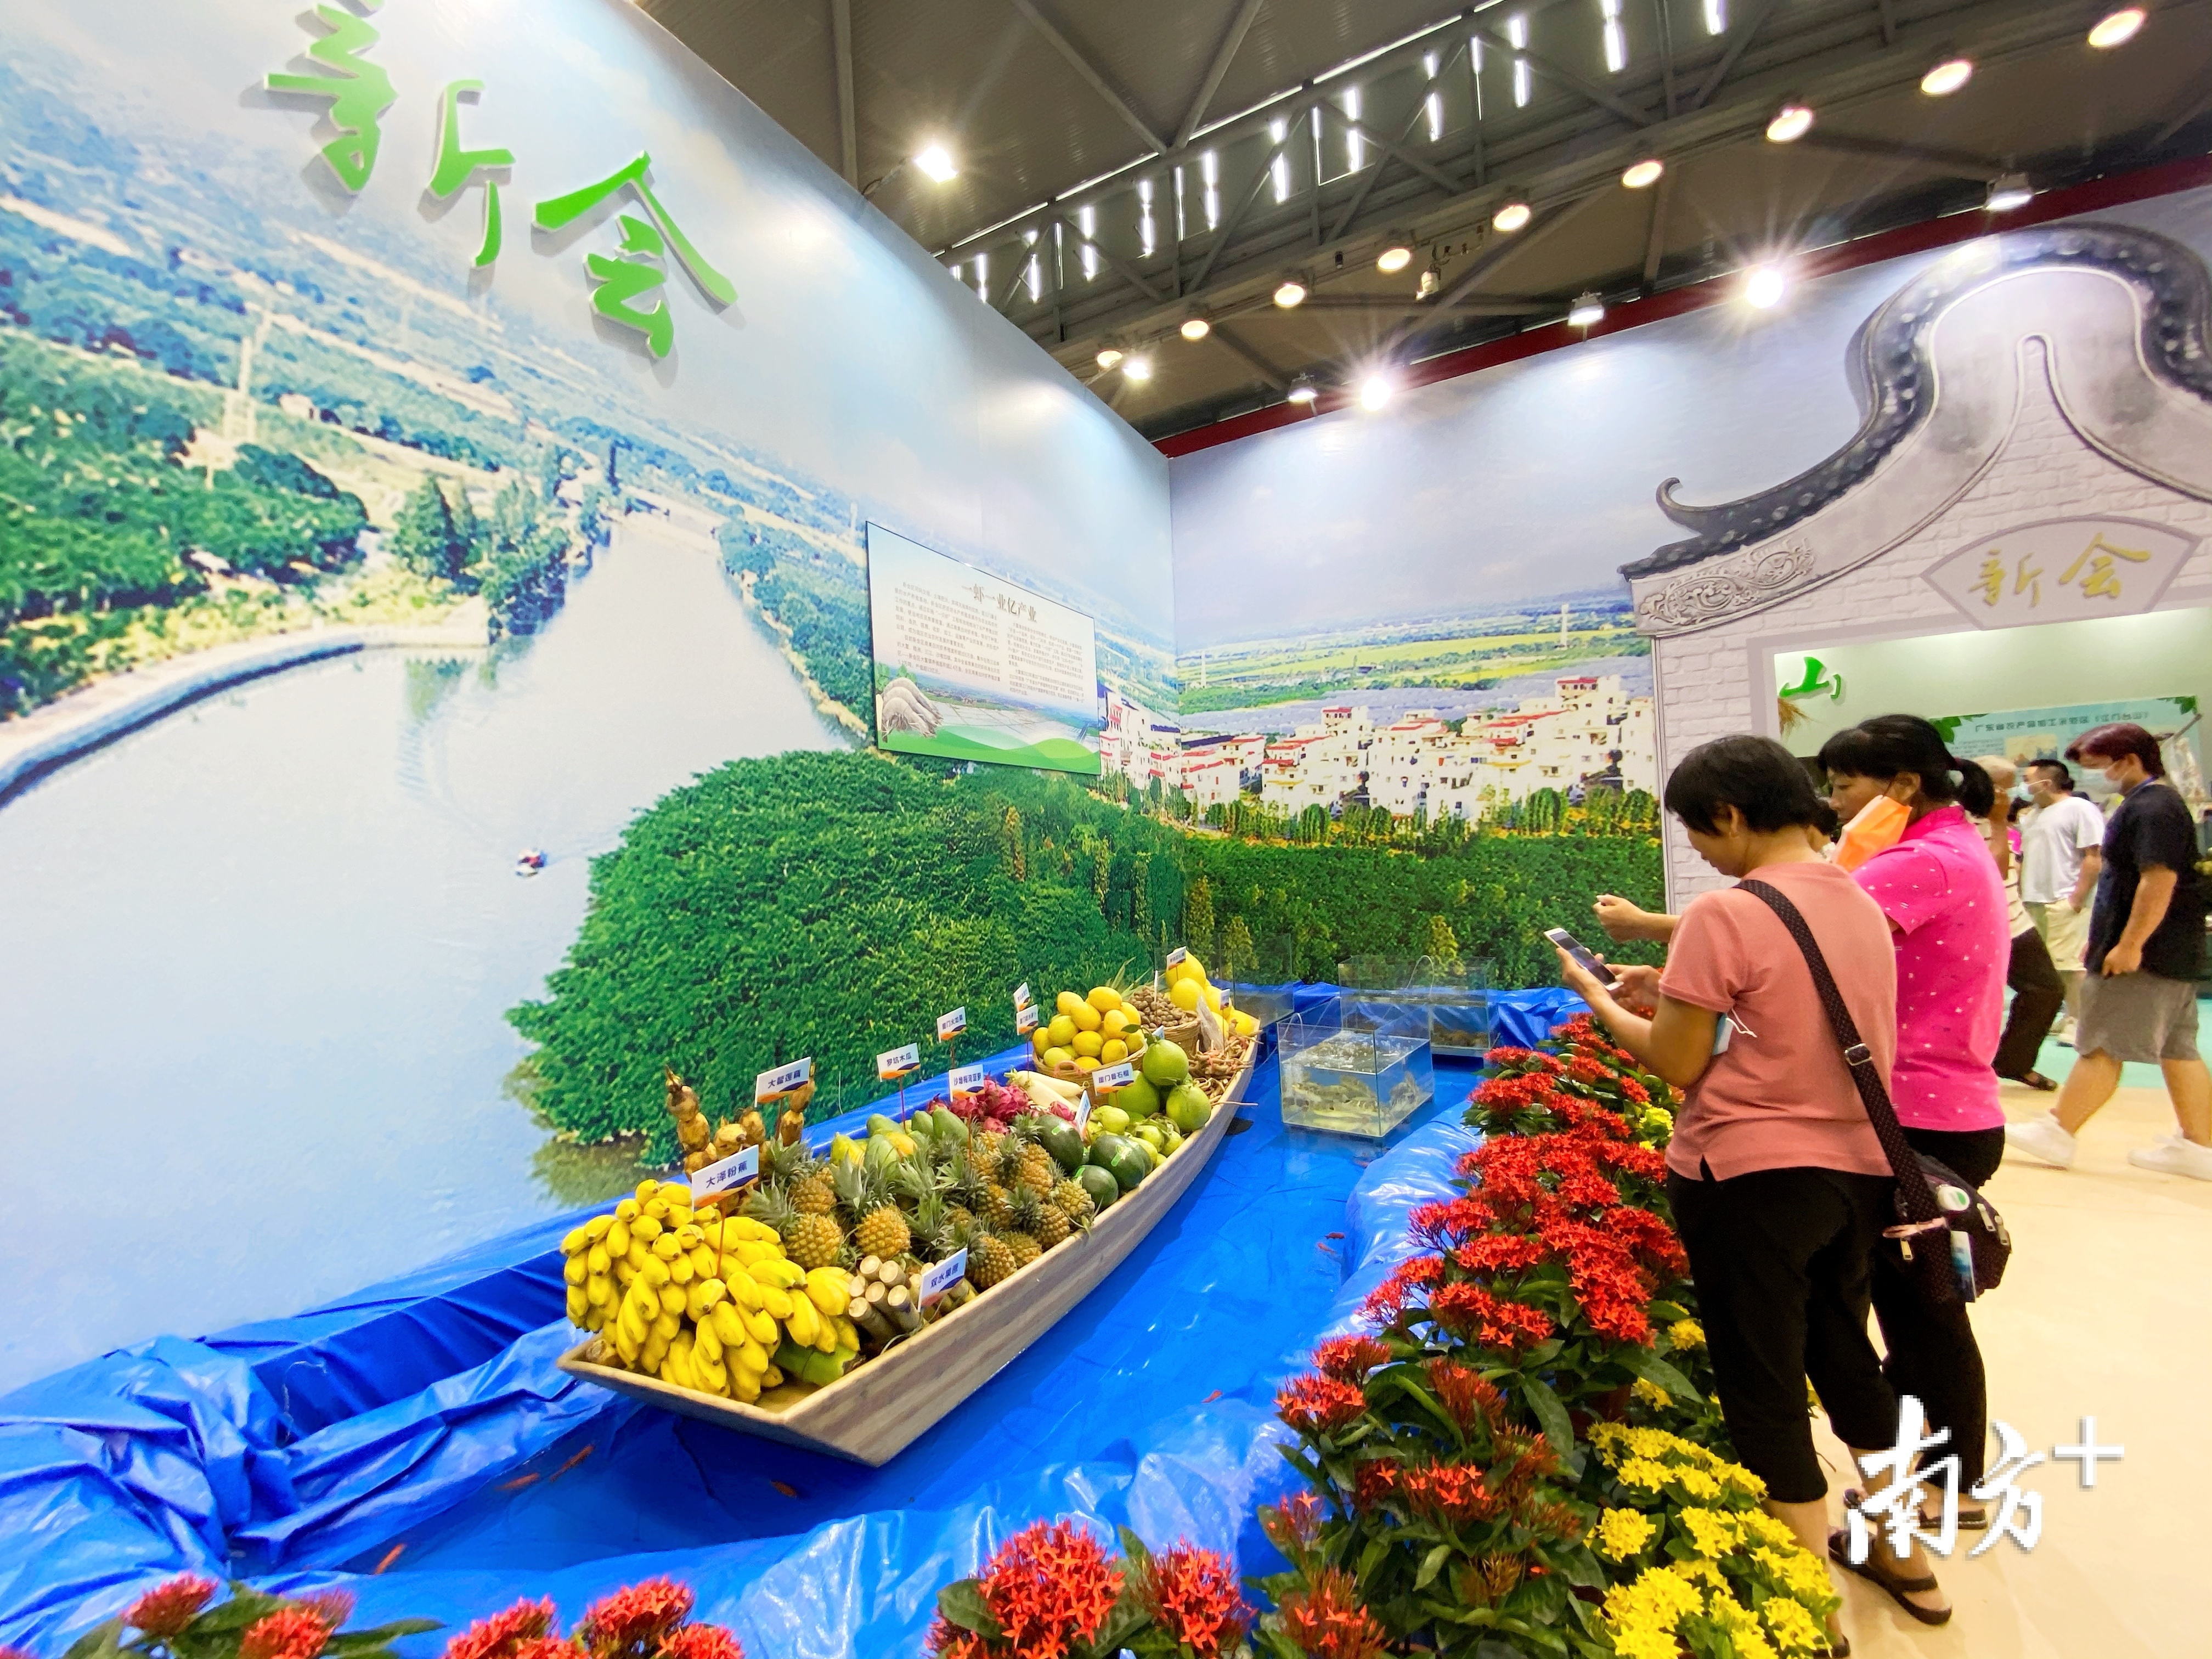 新会区展馆用一艘木船装载了一批特色农产品。